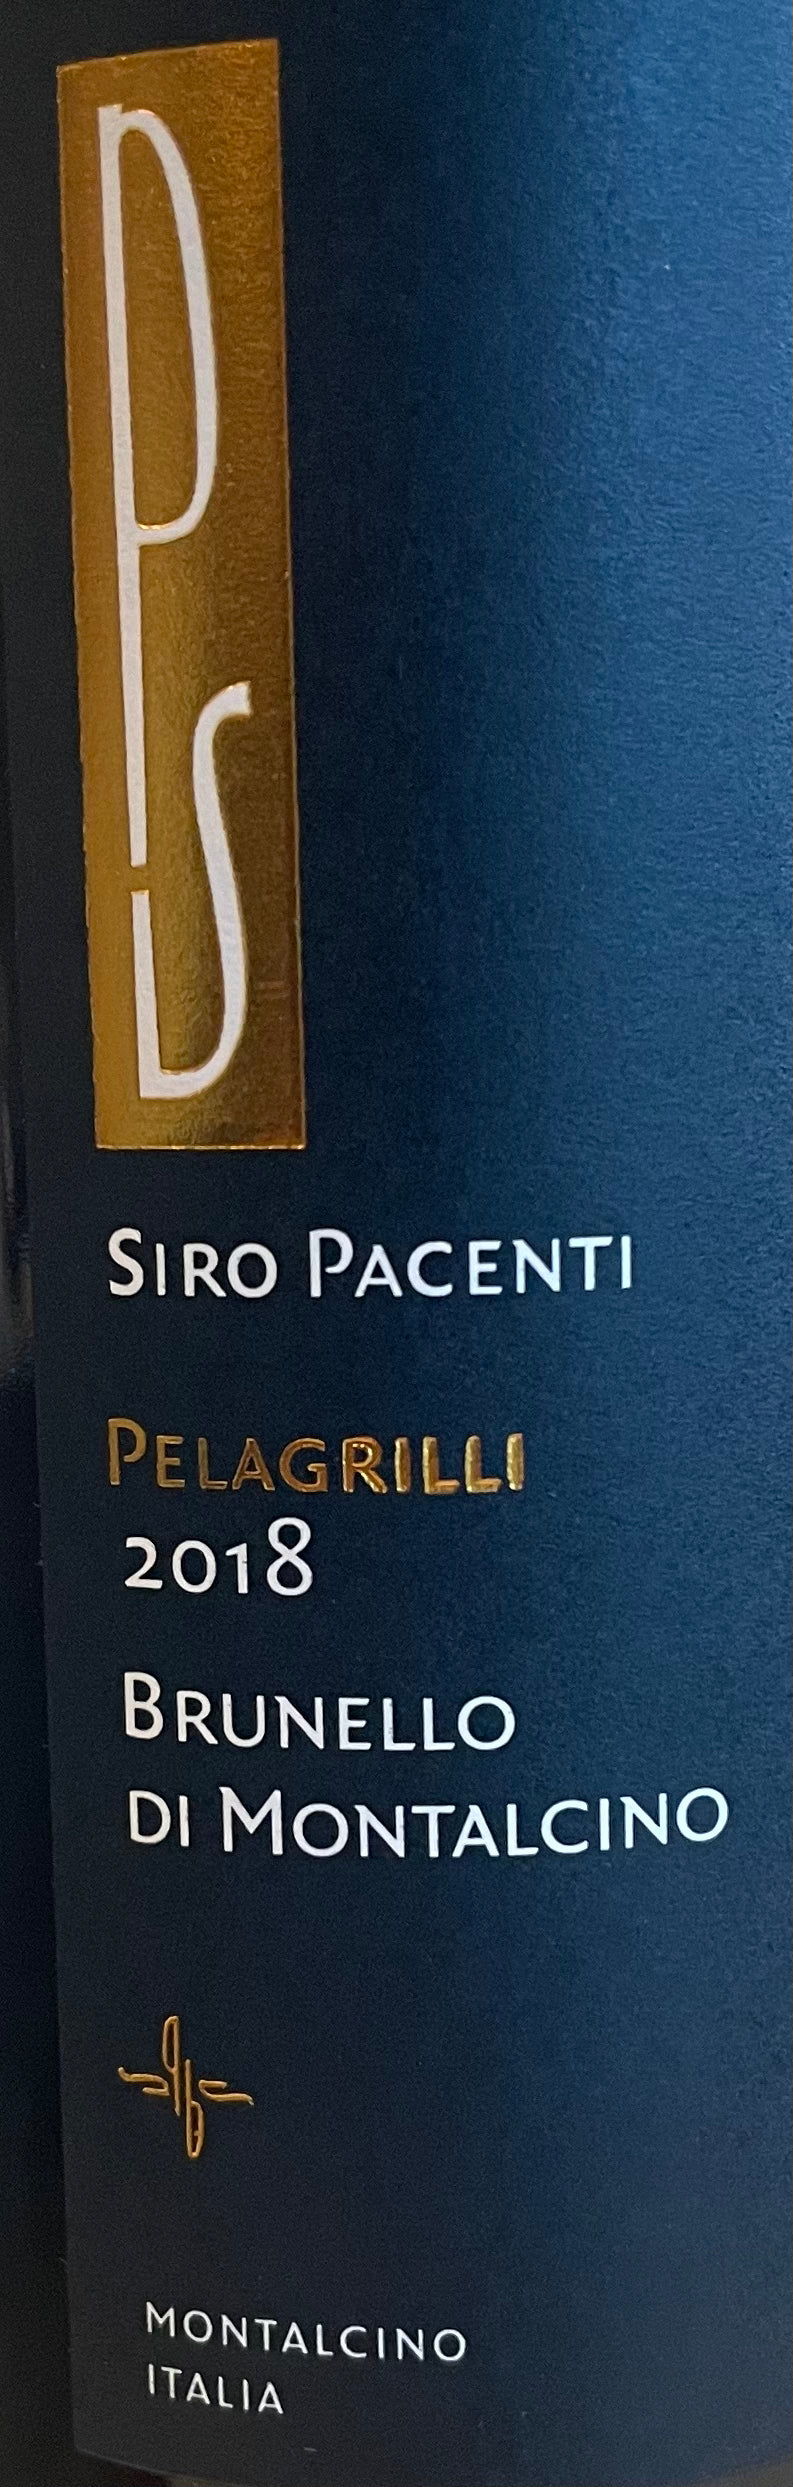 Siro Pacenti 'Pelagrilli' - Brunello di Montalcino